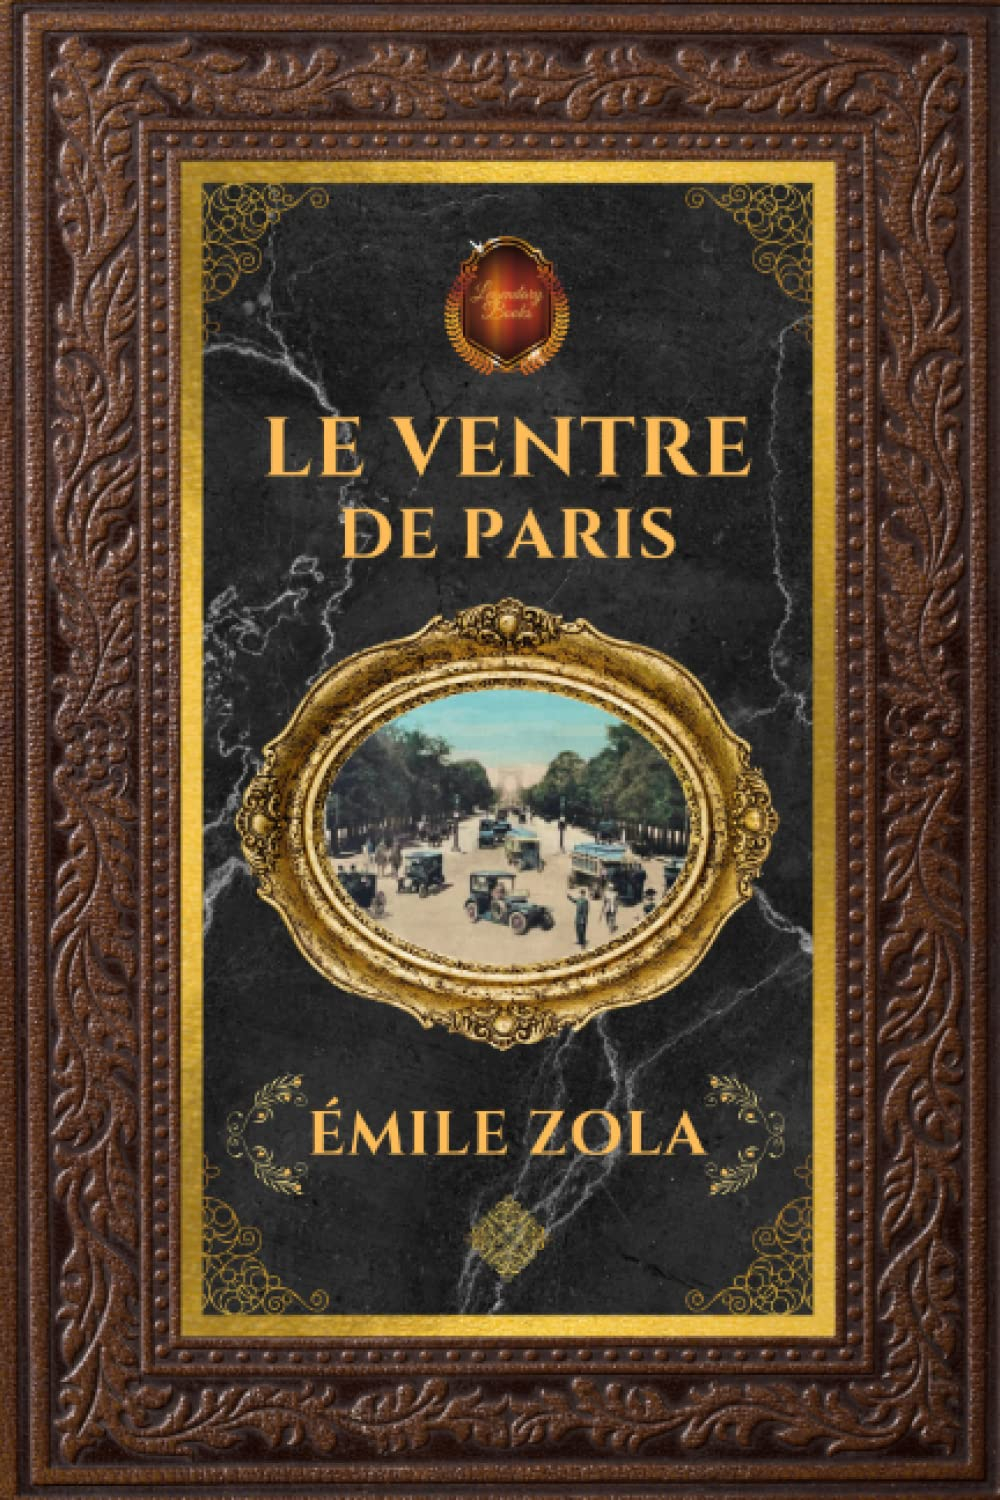 Le Ventre de Paris - Émile Zola: Édition collector intégrale - Grand format 15 cm x 22 cm - (Annotée